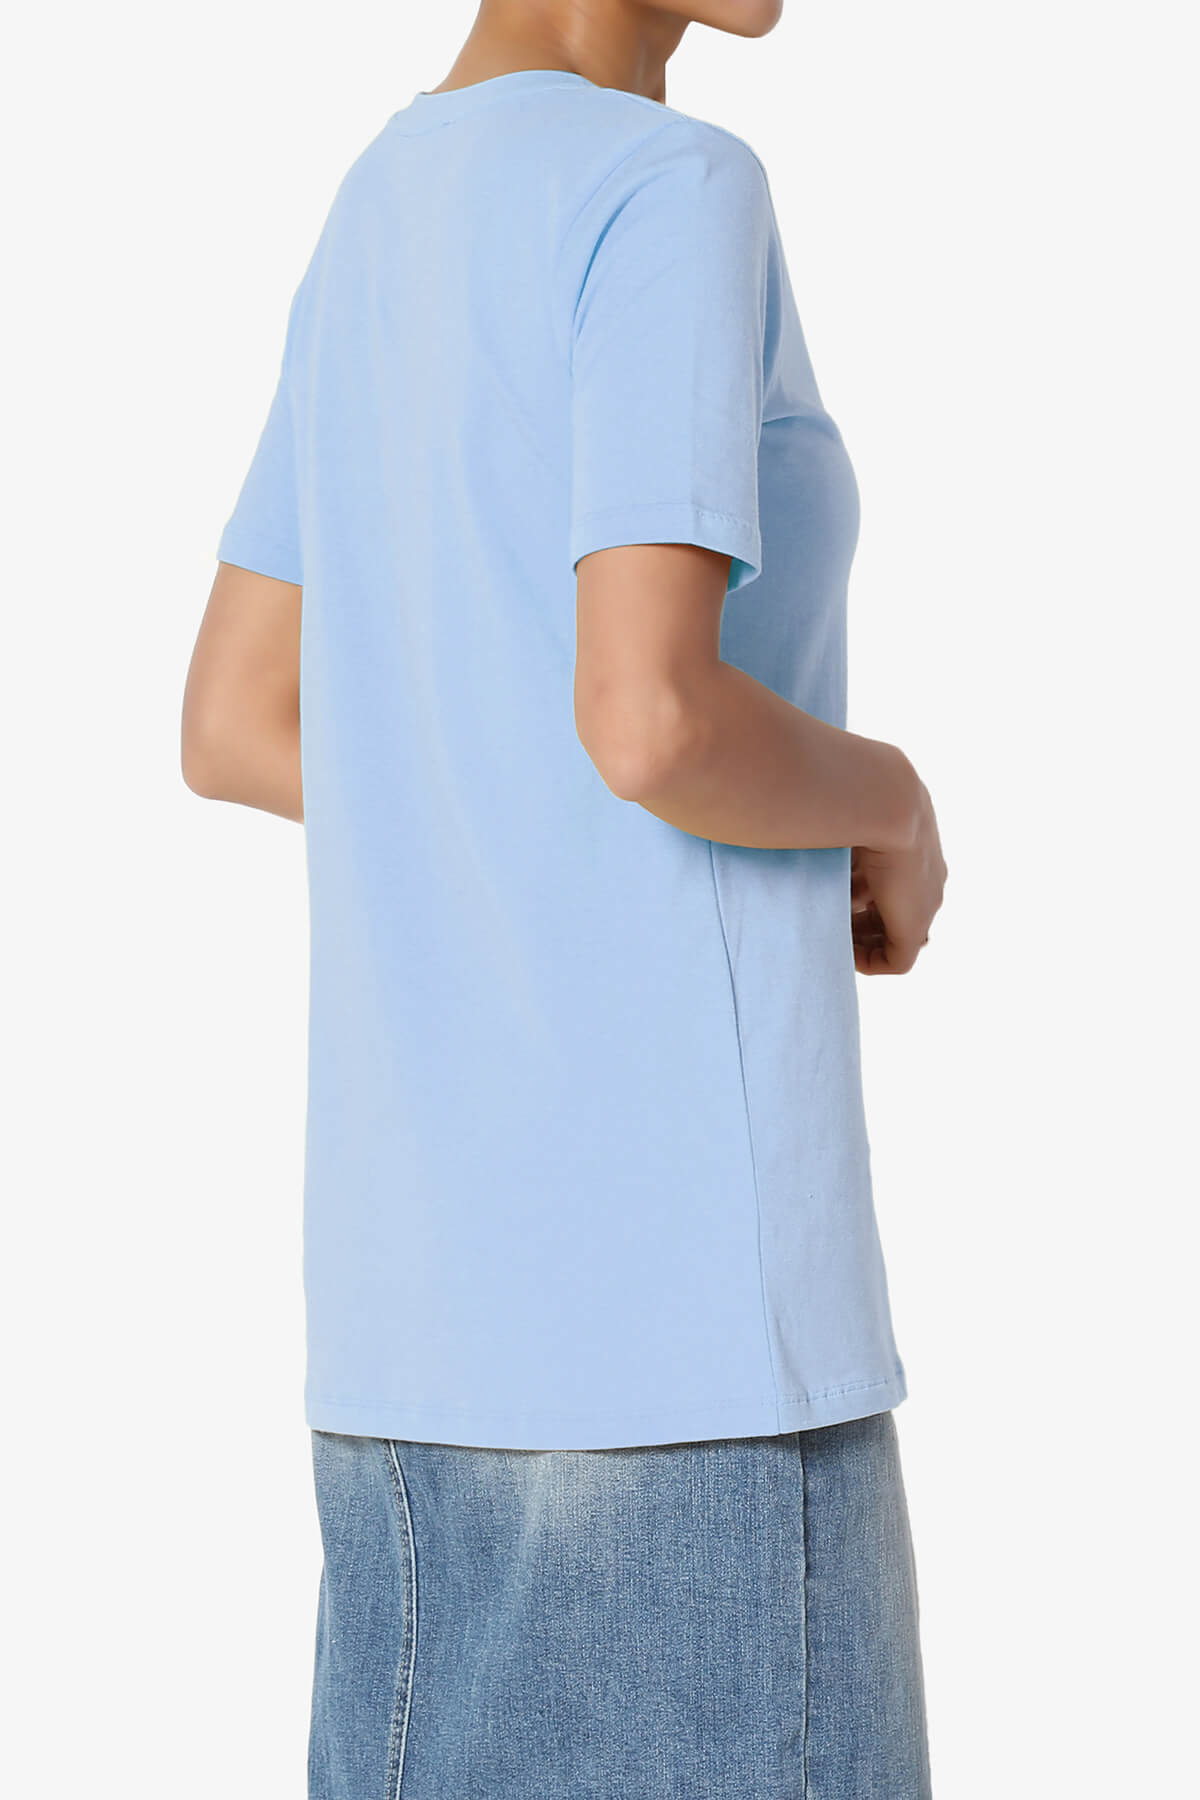 Elora Crew Neck Short Sleeve T-Shirt LIGHT BLUE_4